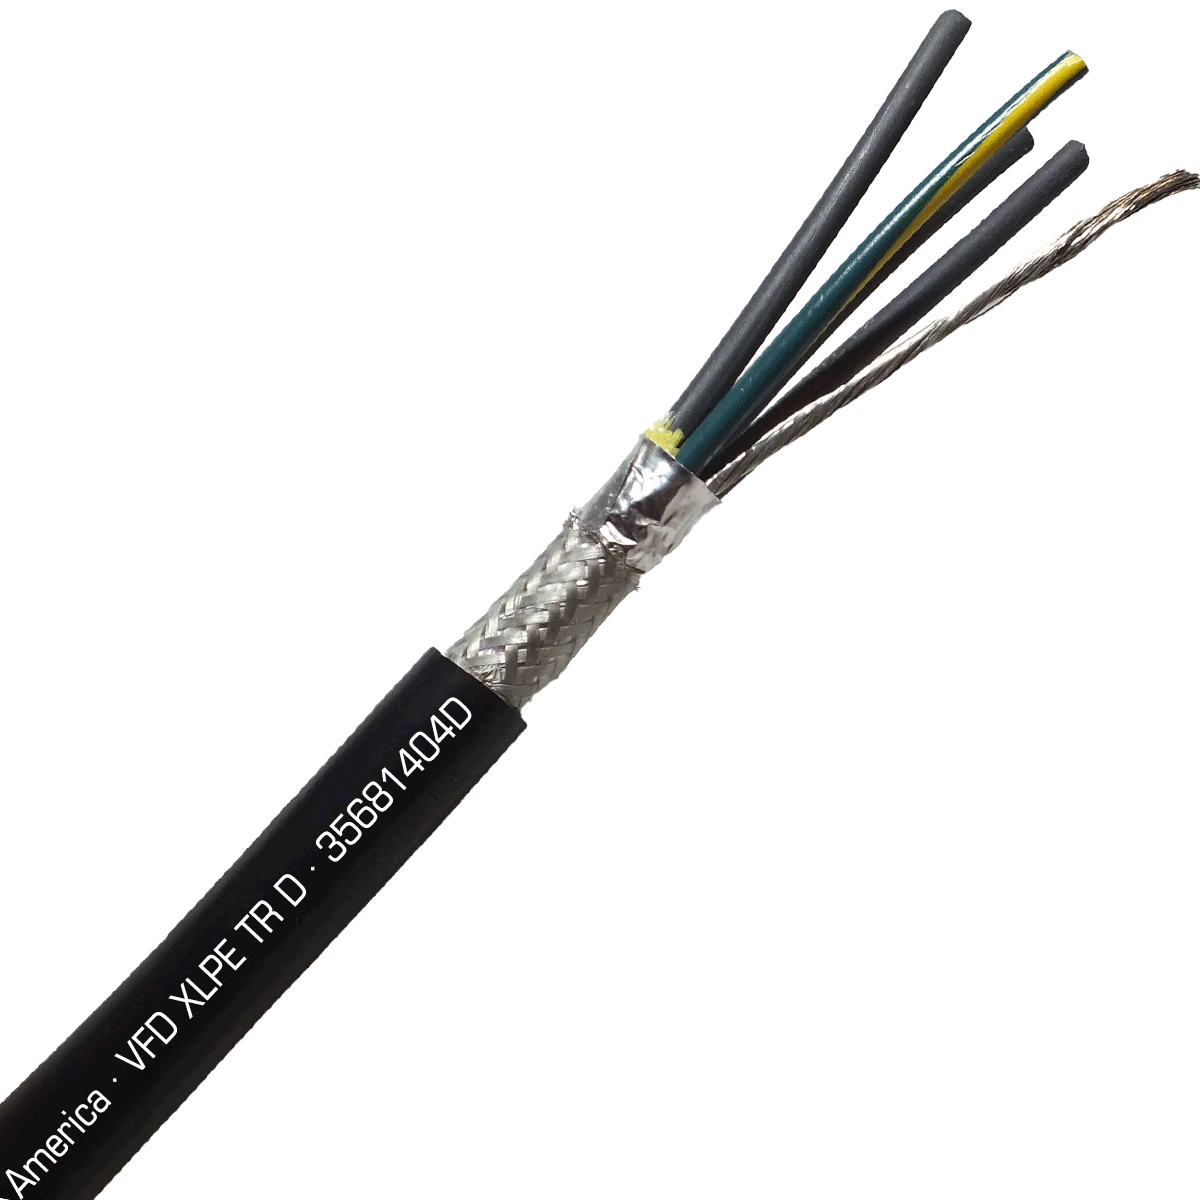 VFD Cable